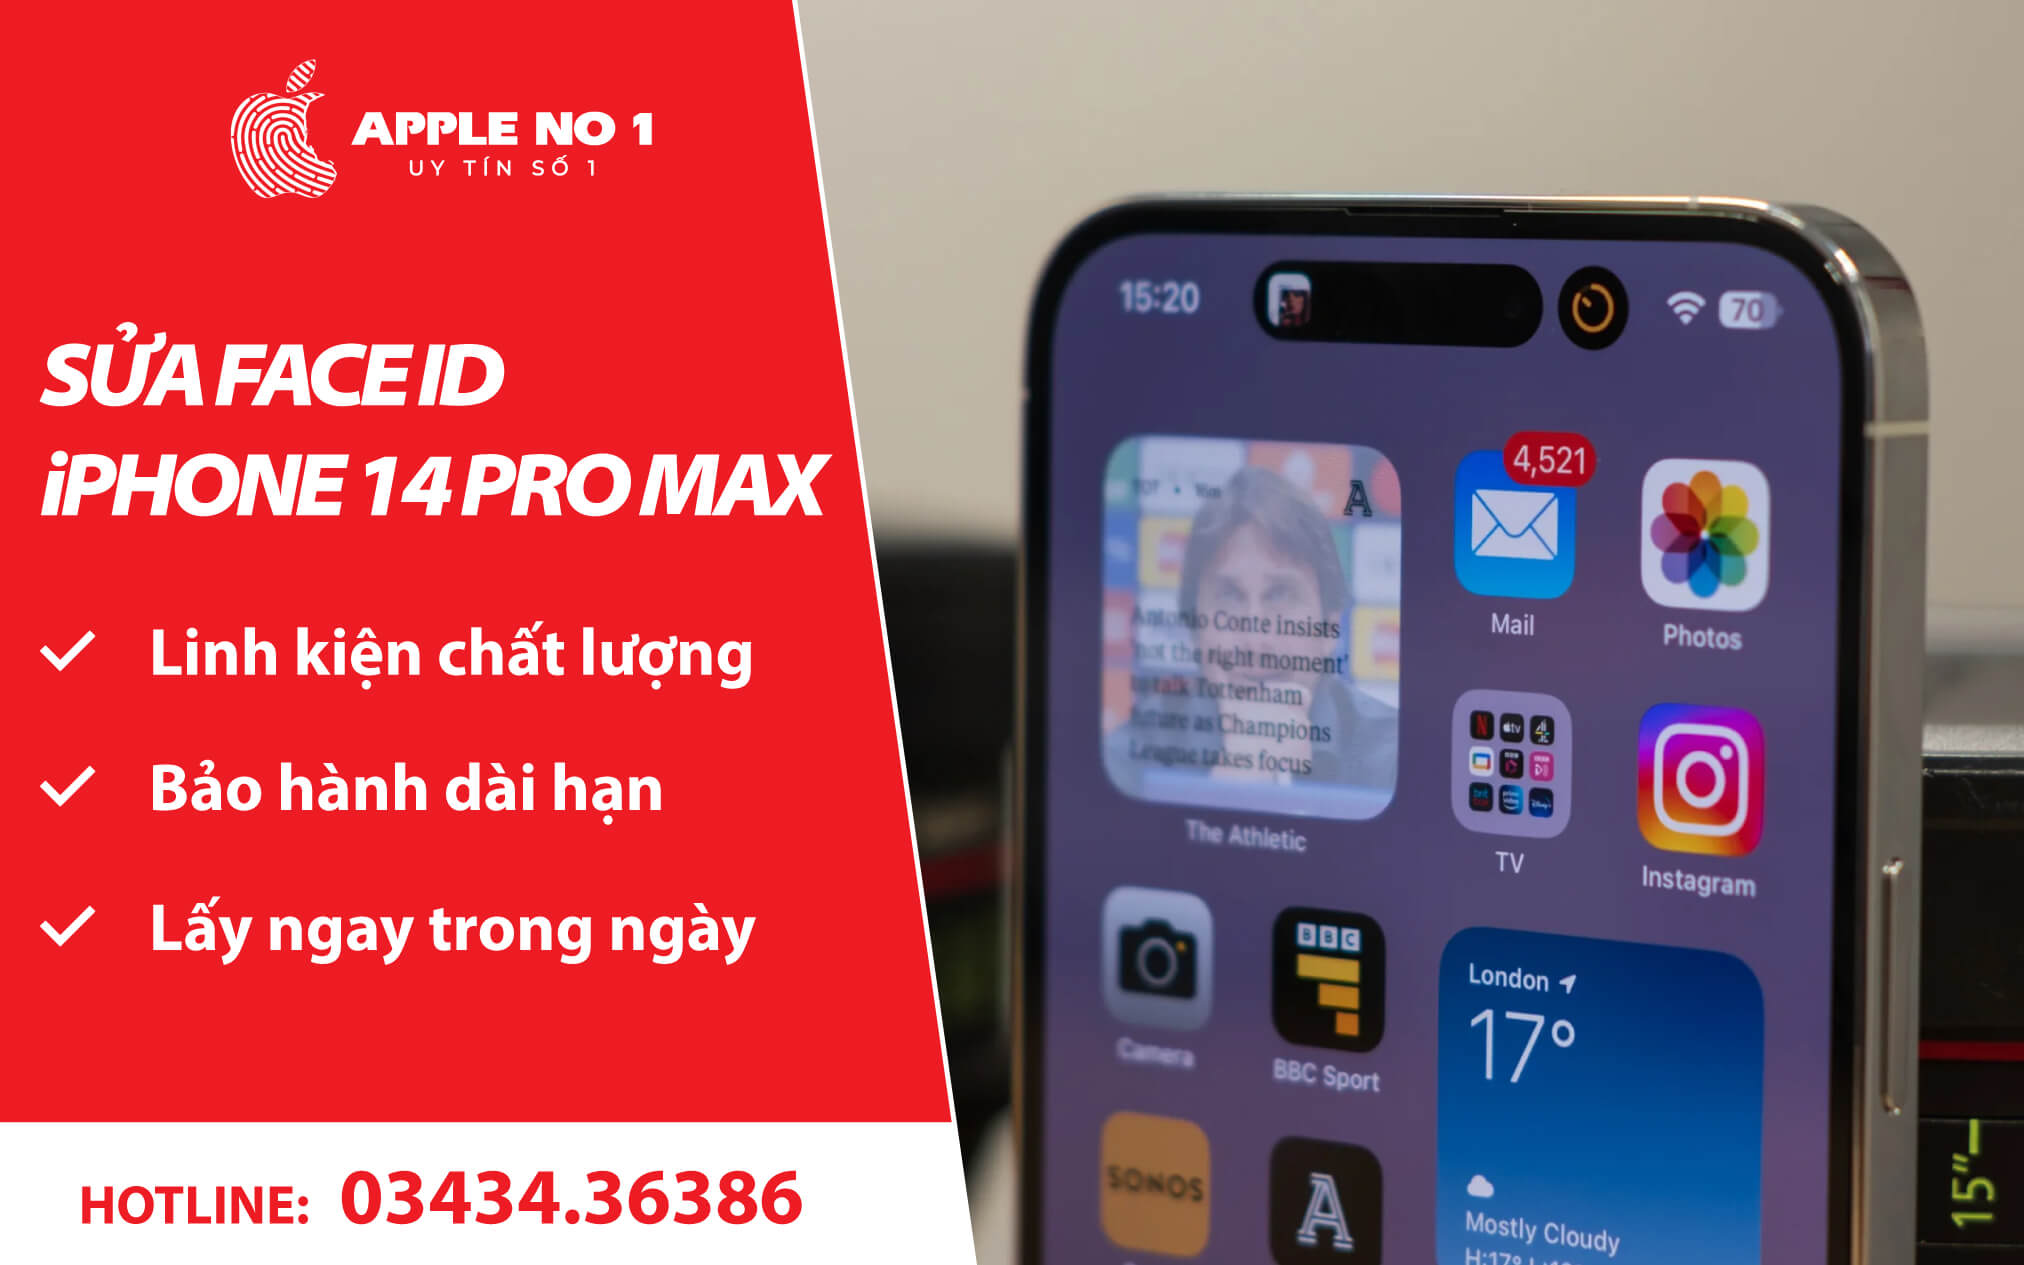 Sửa Face ID iPhone 14 Pro Max lấy ngay, uy tín tại APPLENO1.VN